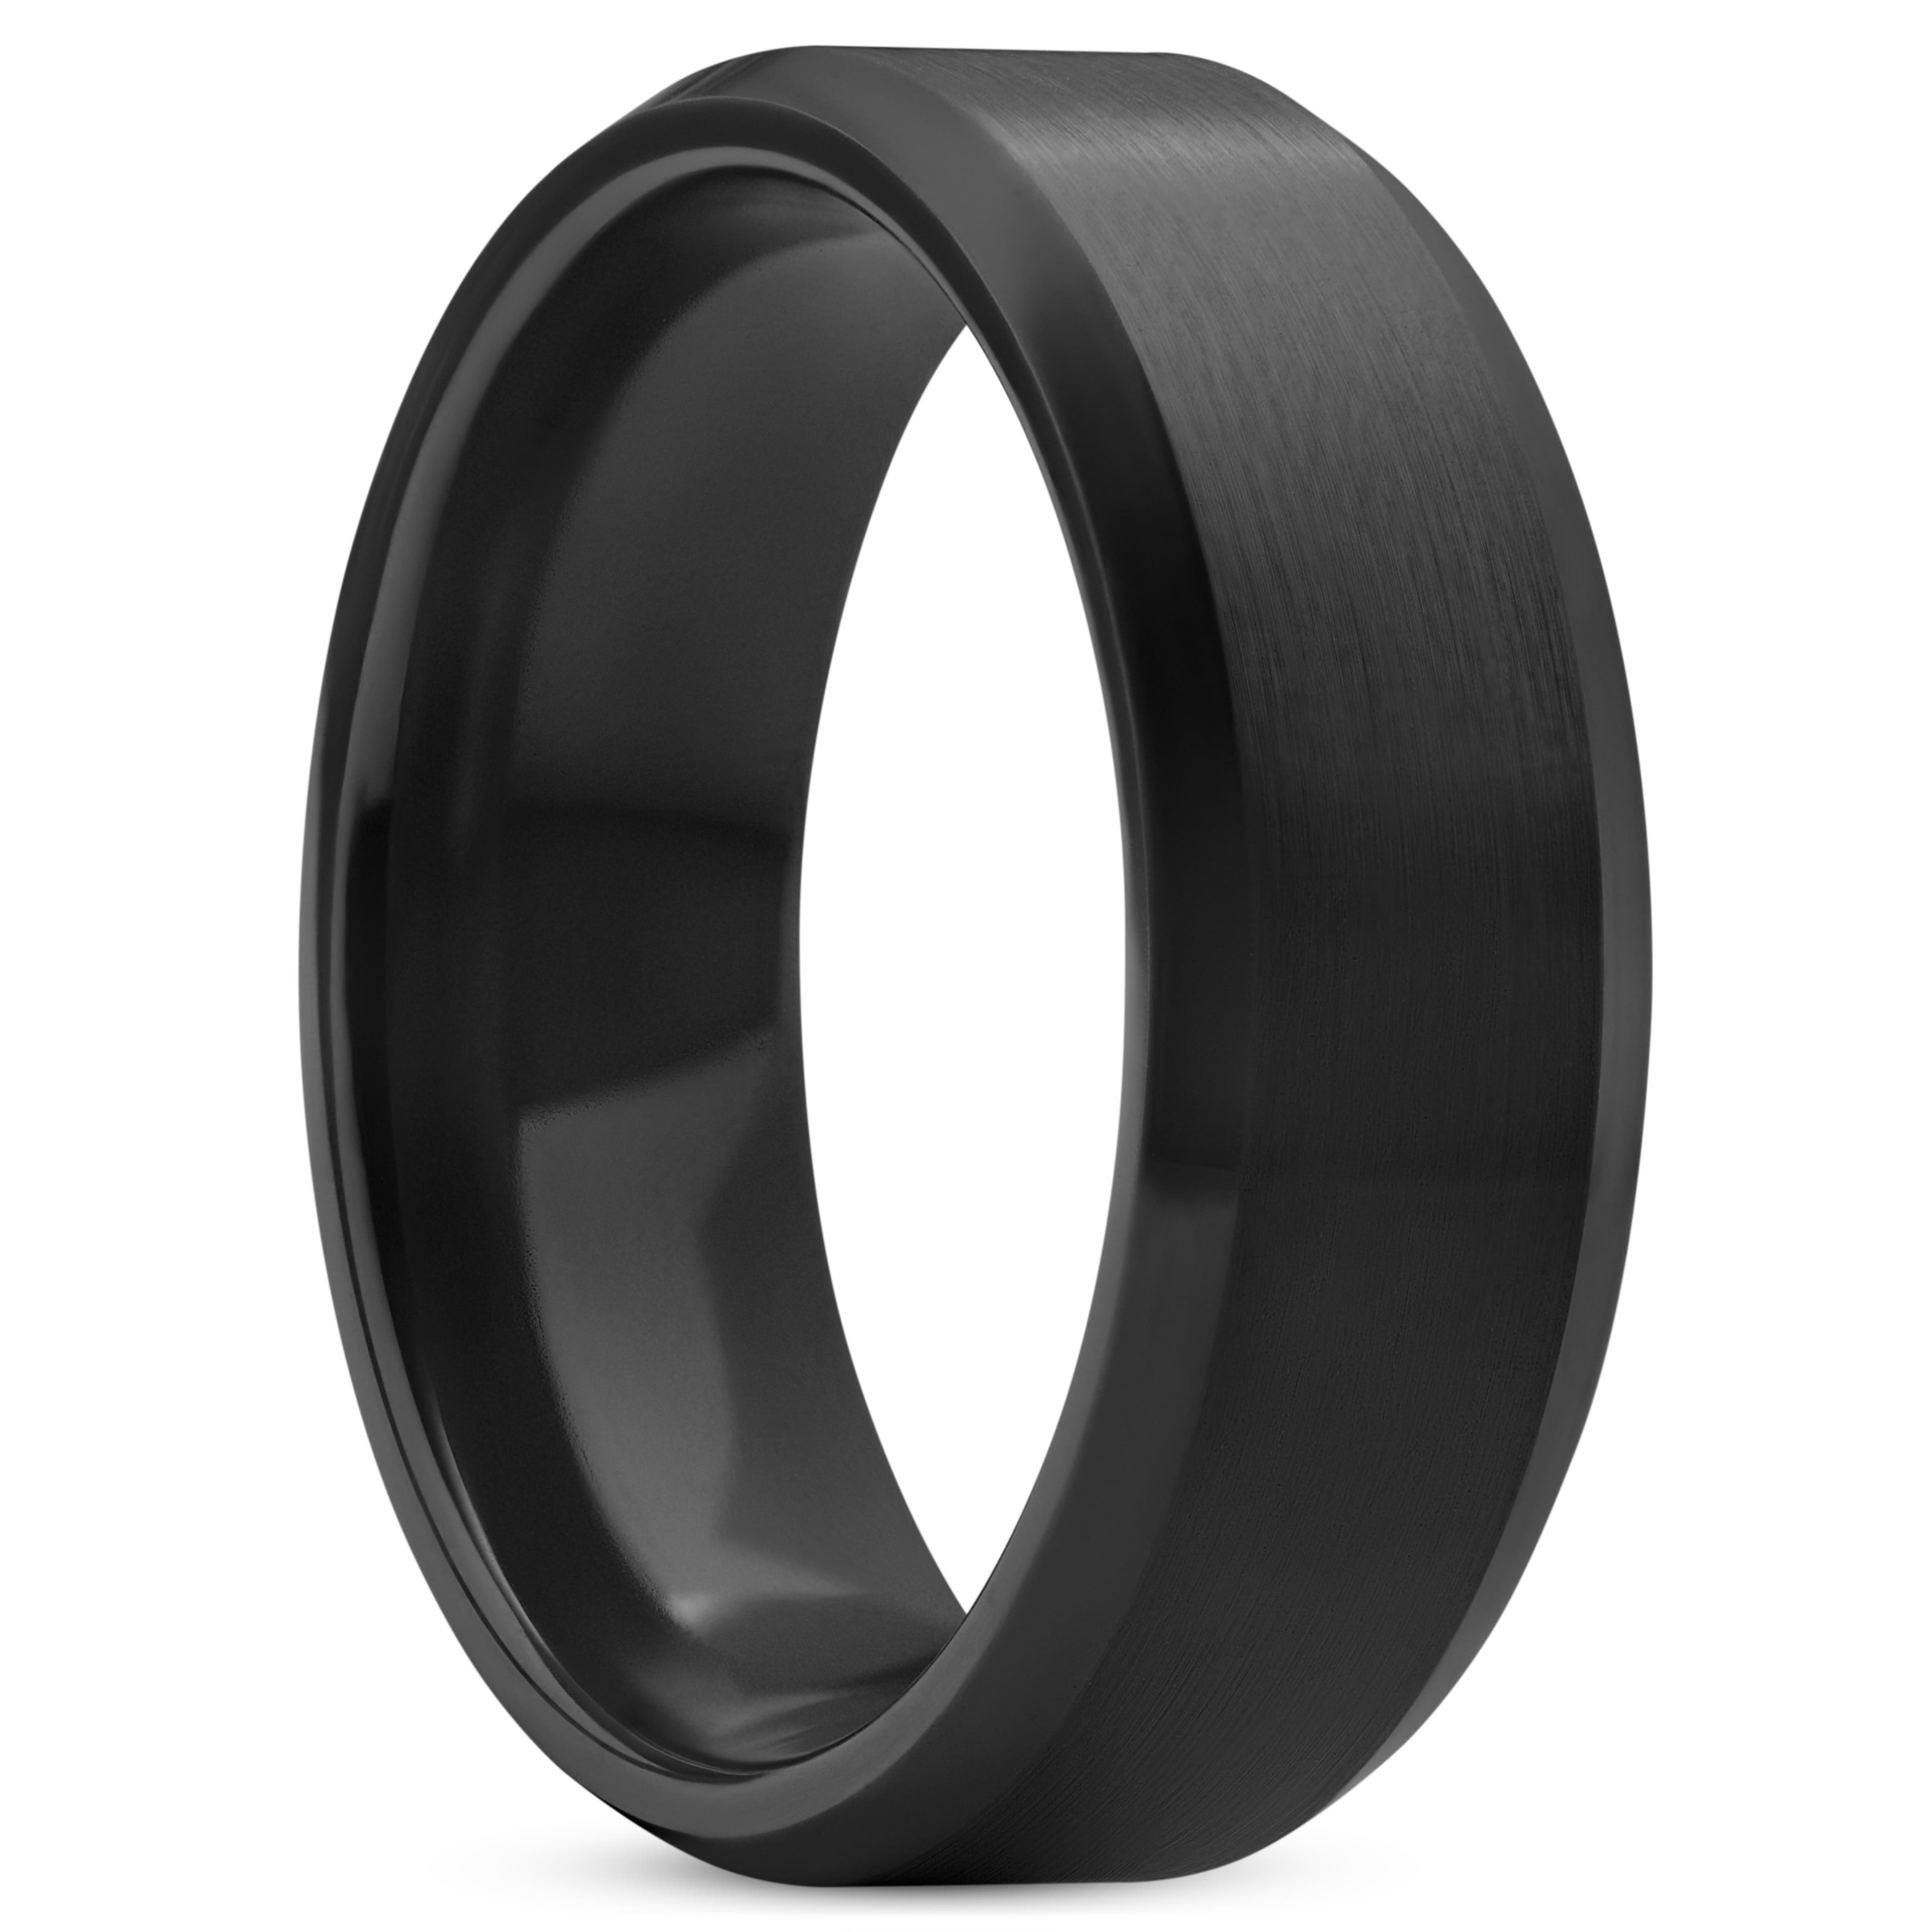 Ferrum | 8 mm černý broušený a leštěný keramický prsten se zkosenými okraji